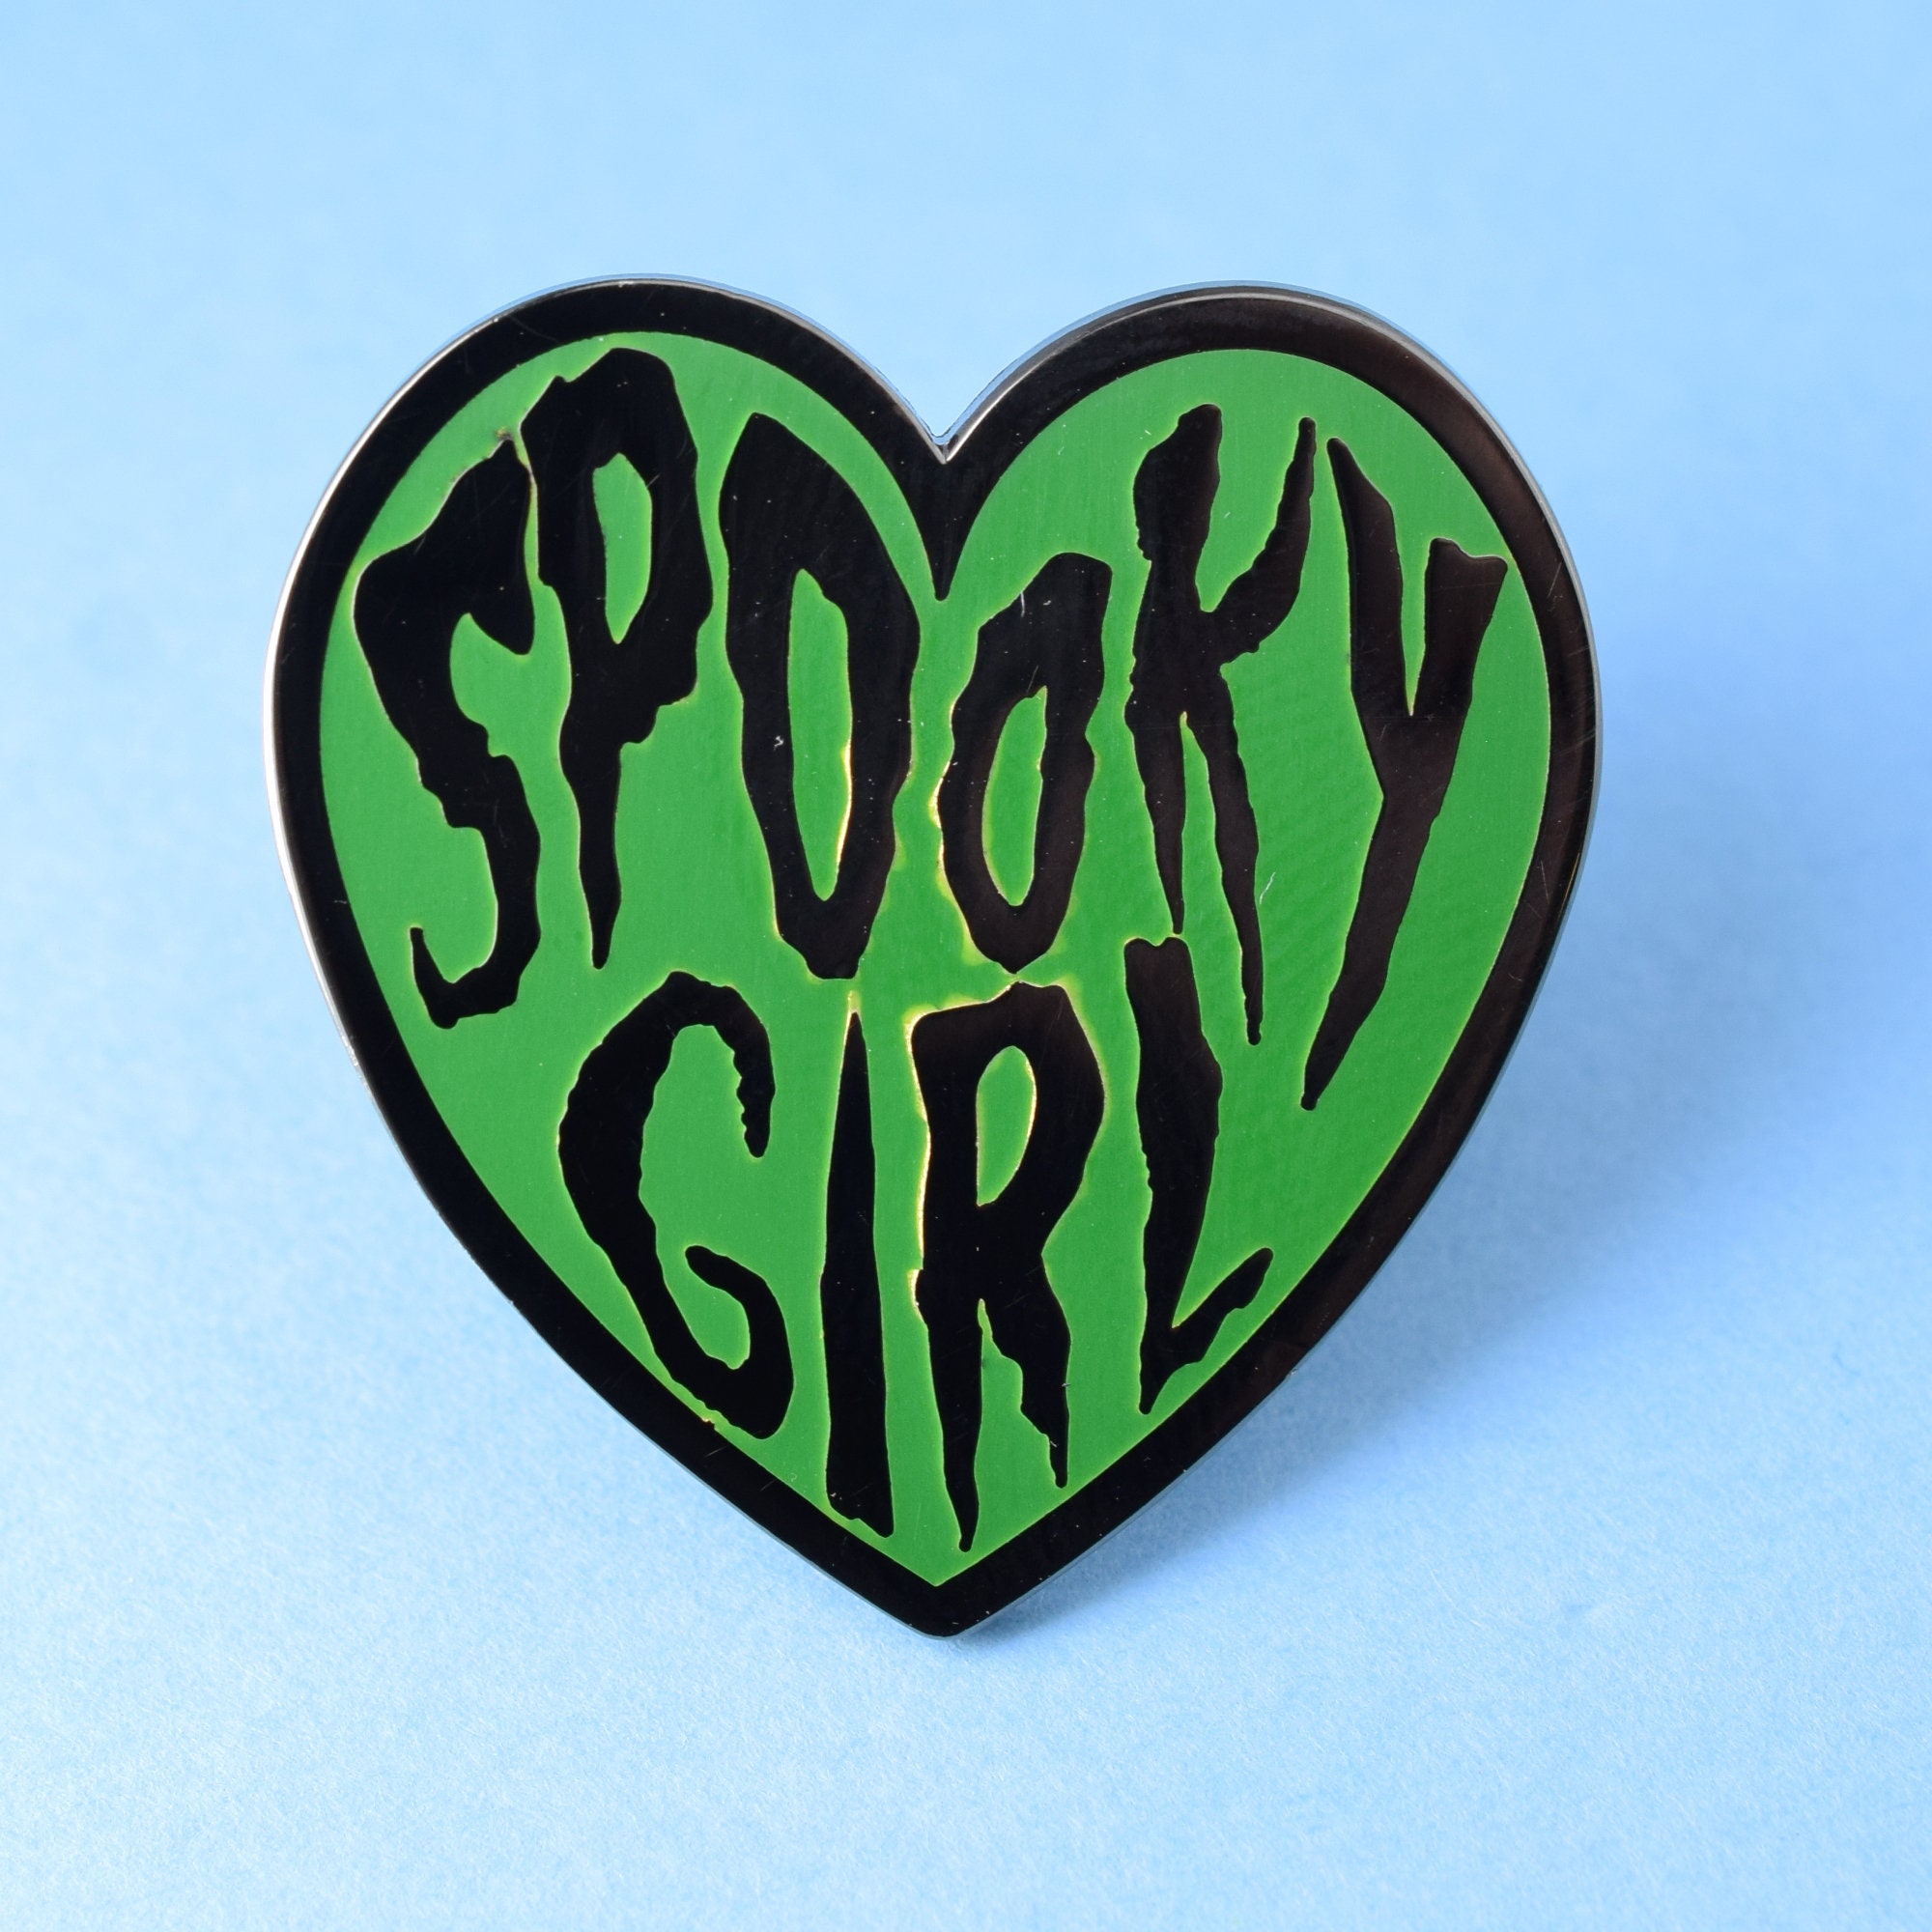 Spooky girl love